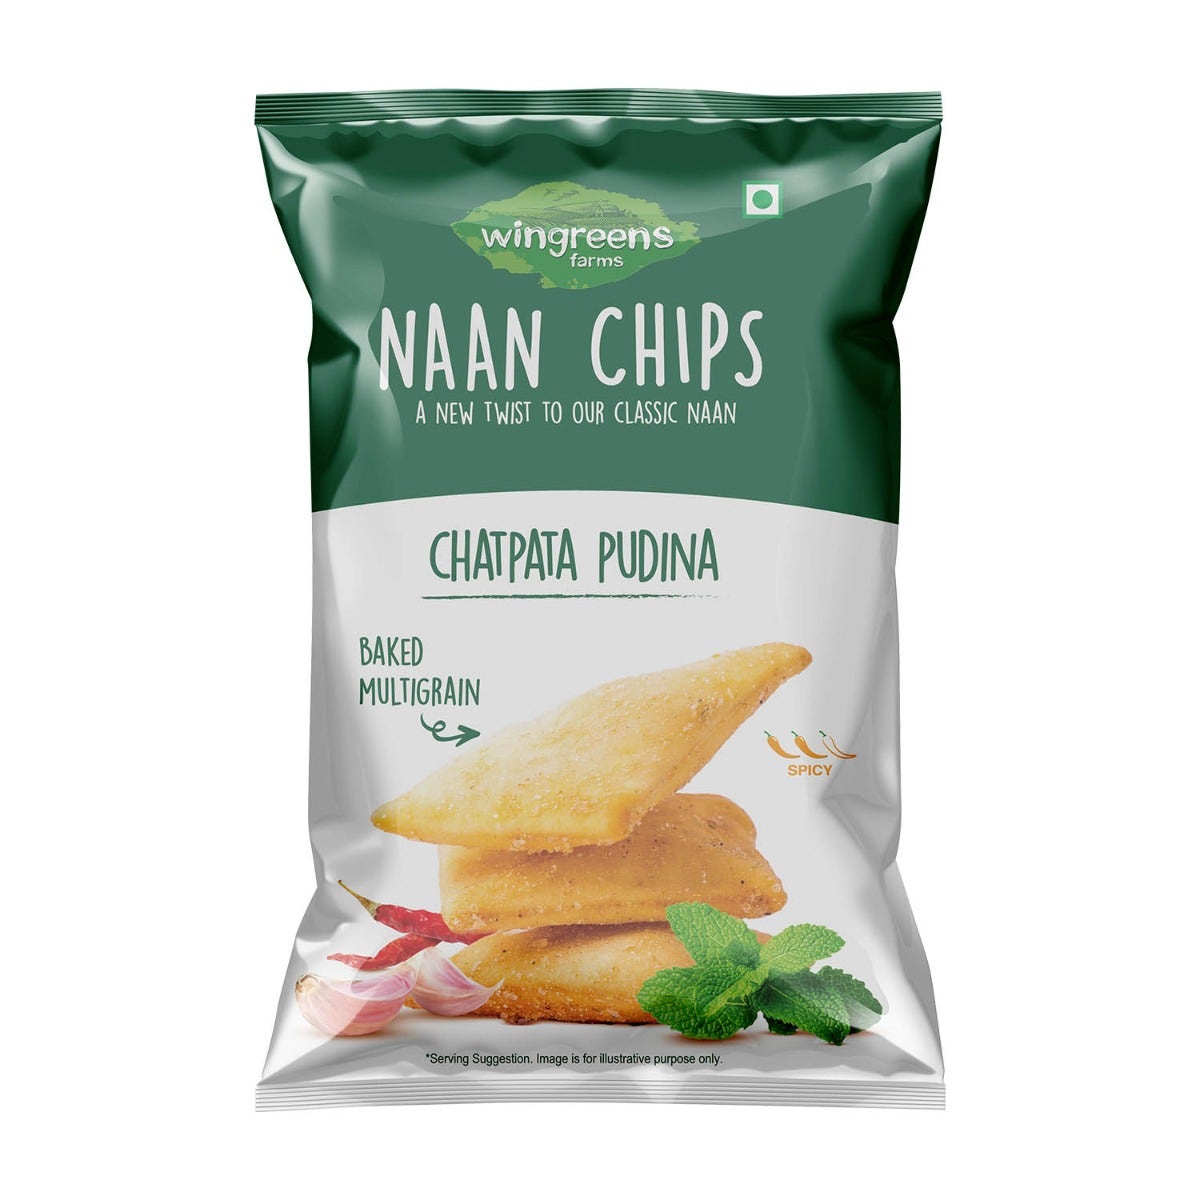 Chatpata Pudina Naan Chips